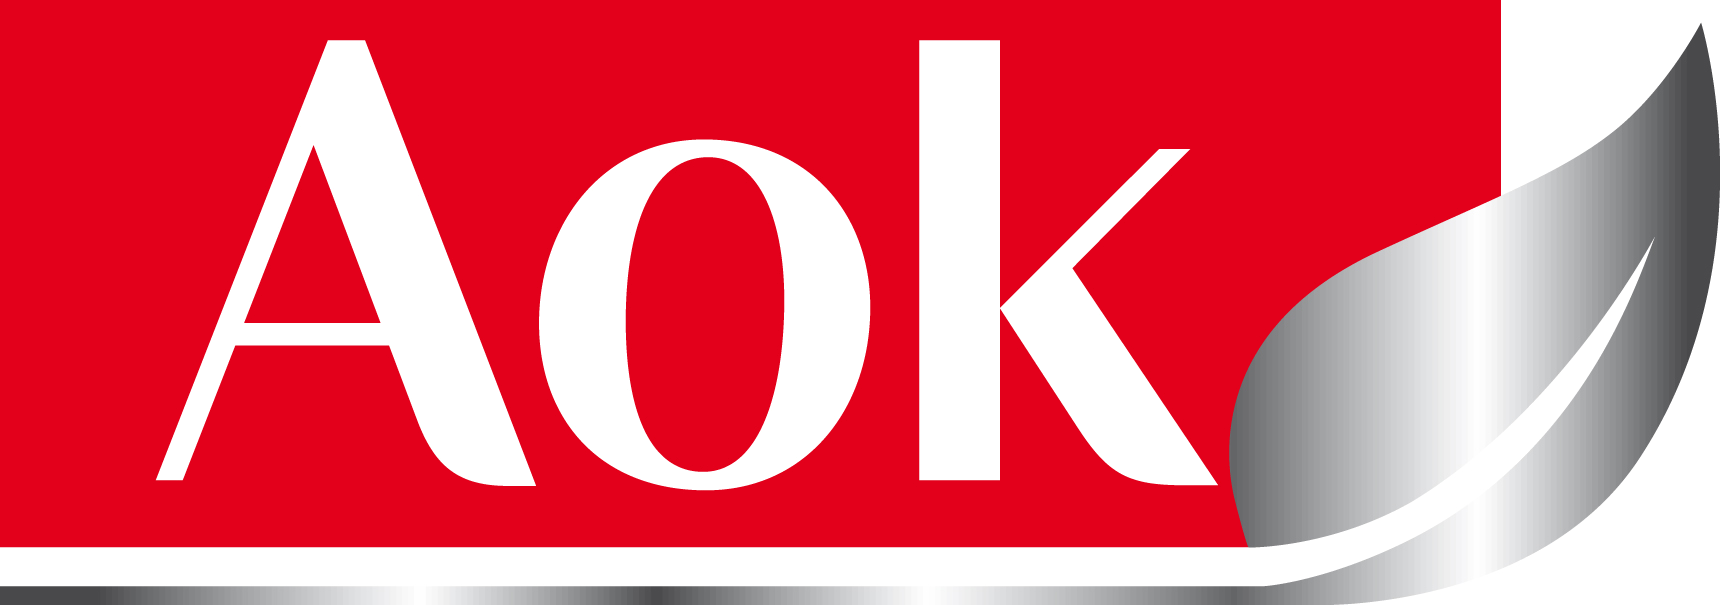 Parent Directory - aok_logo_2